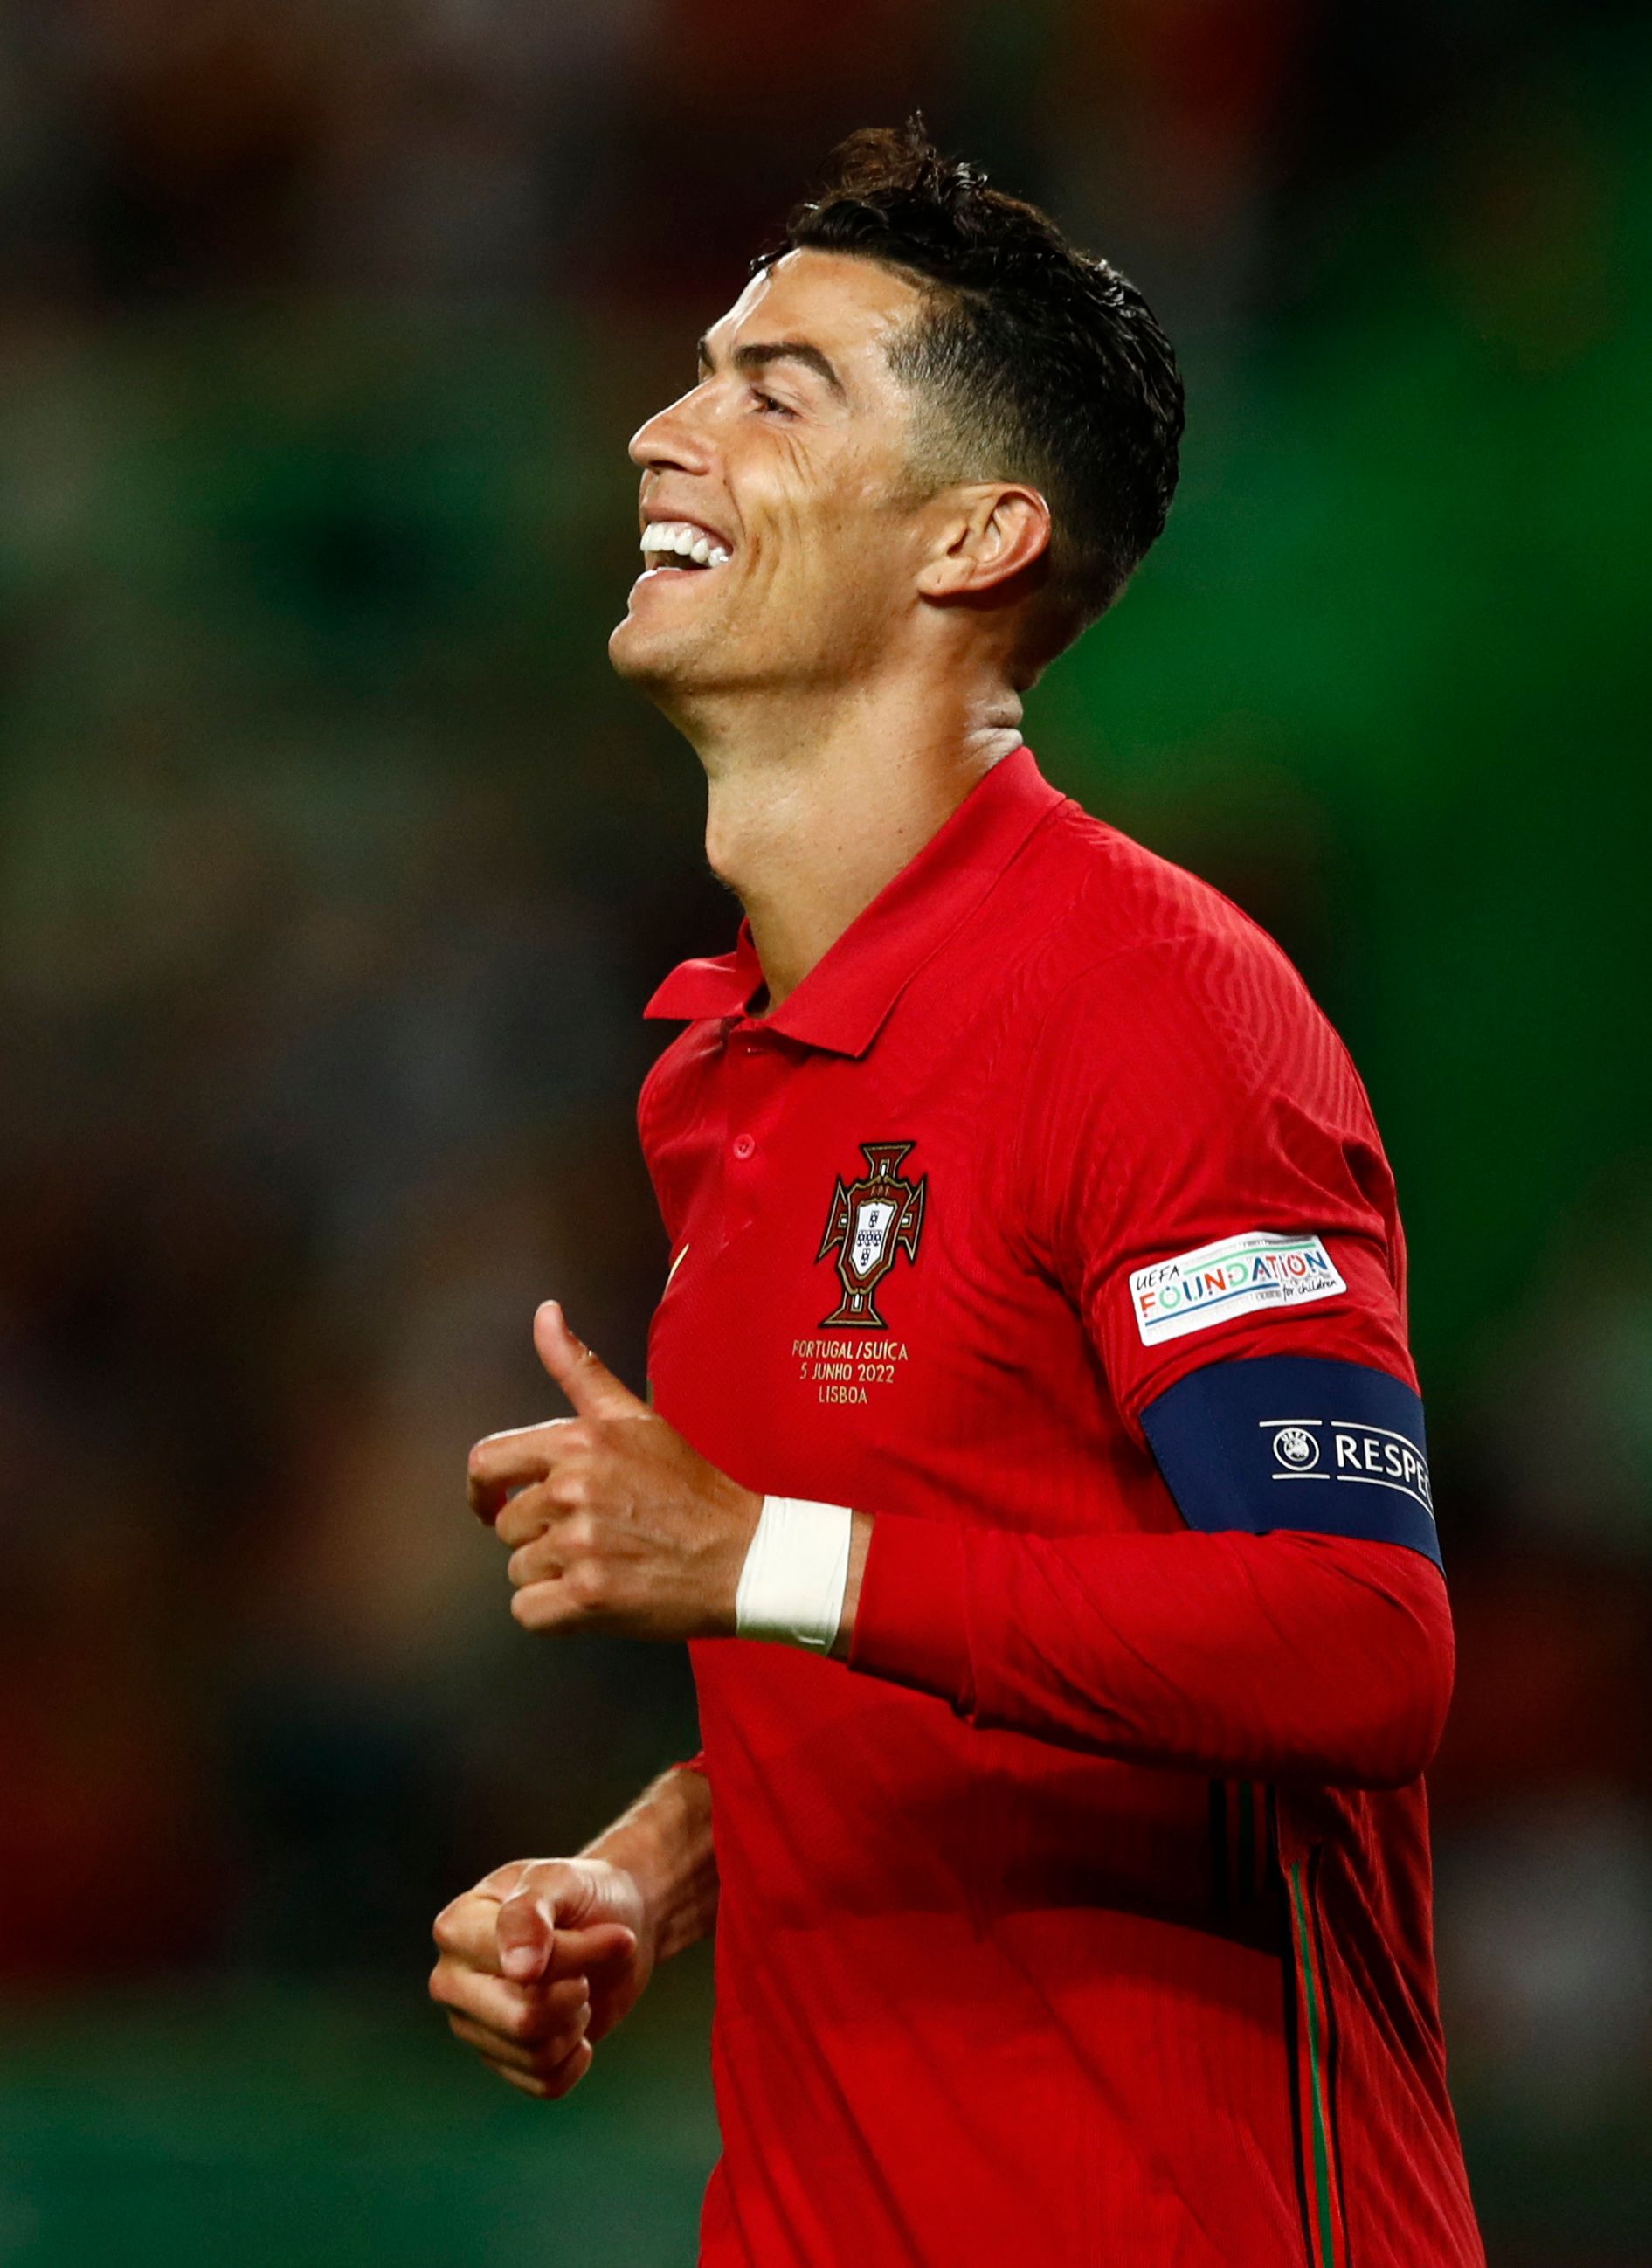 Portugal's Ronaldo celebrating.